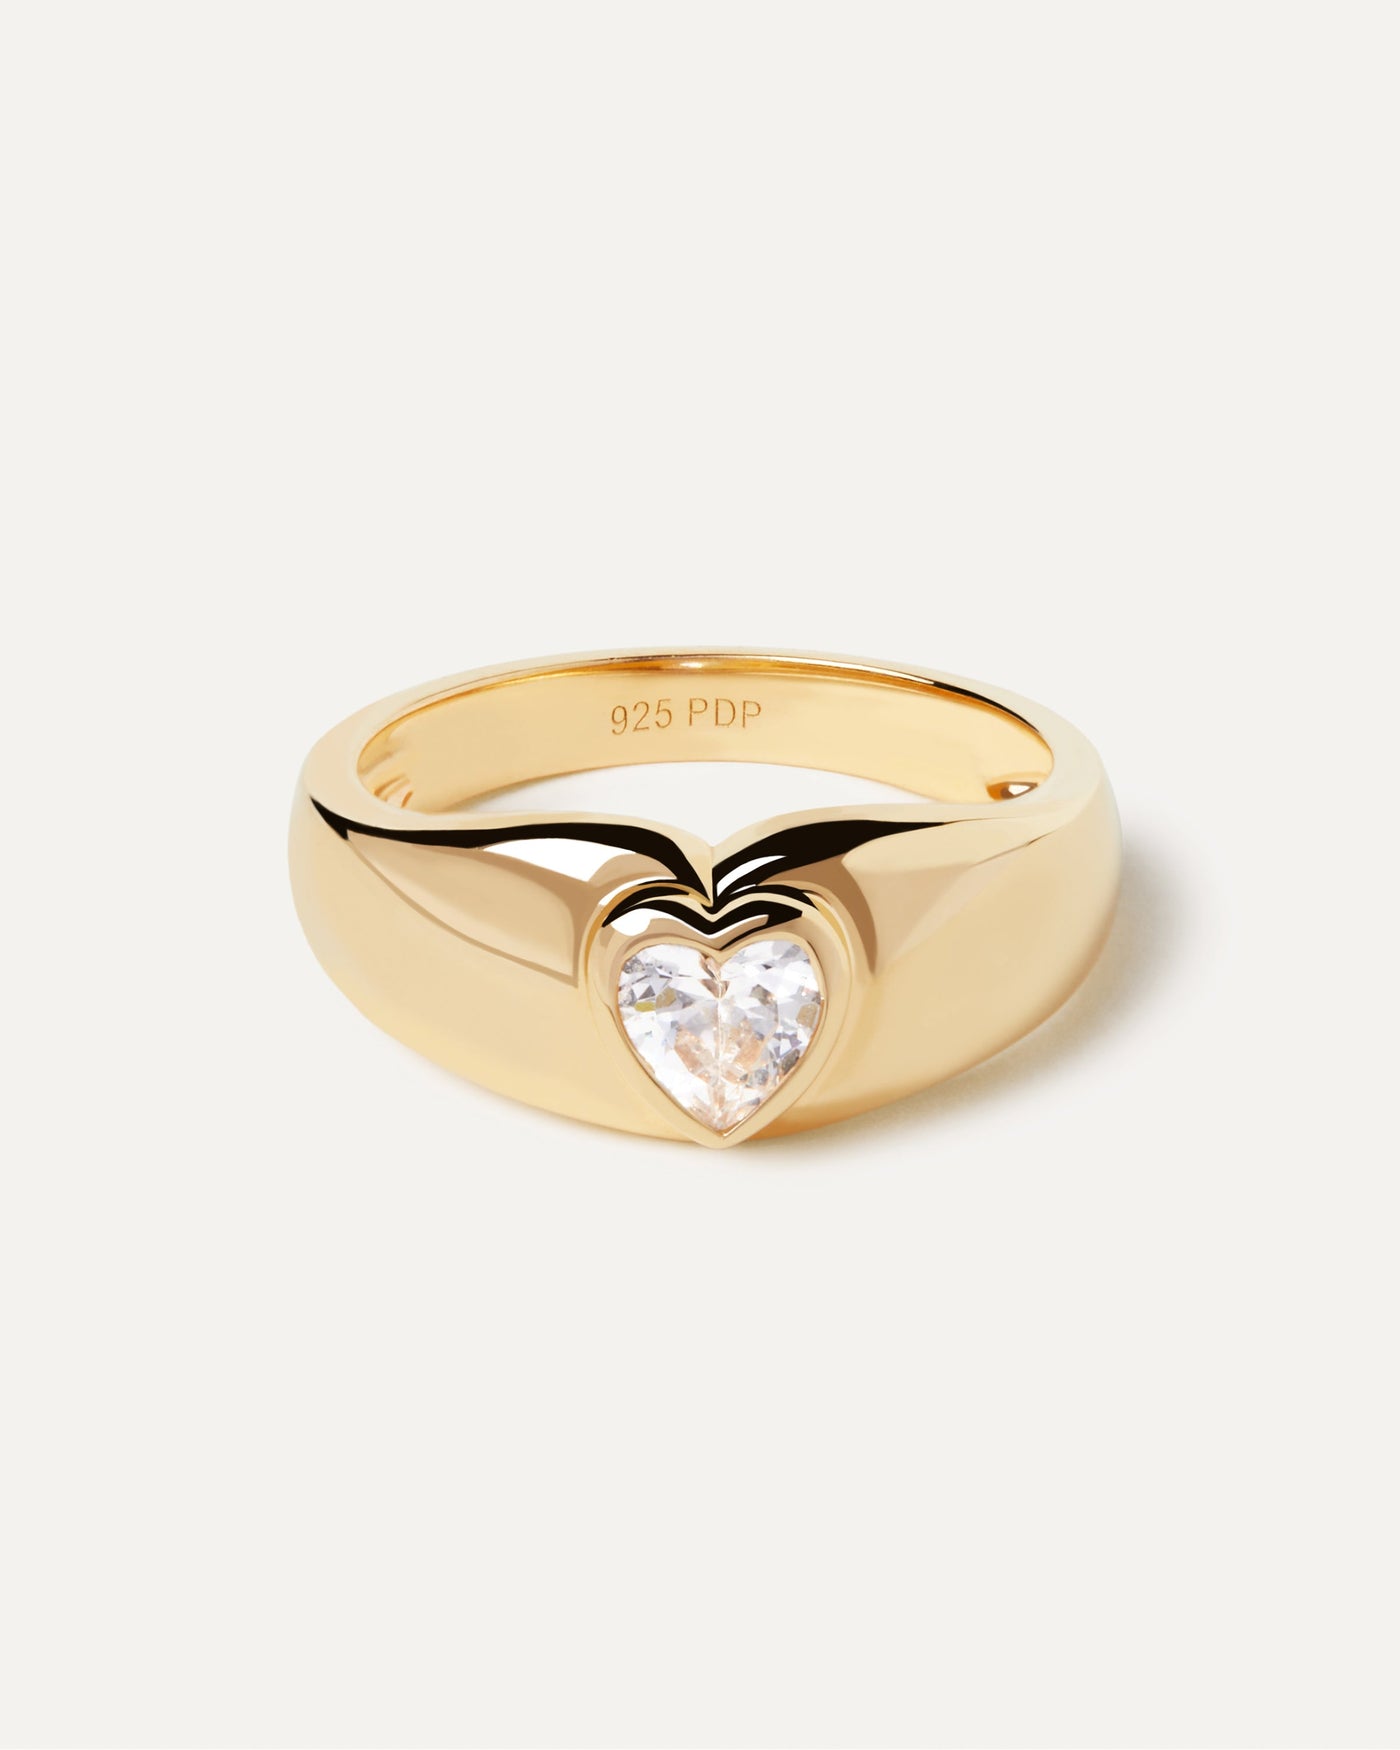 Anello Bright Heart. Grande anello in argento placcato oro con zircone a forma cuore. Acquista le ultime novità di PDPAOLA. Effettua il tuo ordine in tutta sicurezza e non lasciarti sfuggire questo best seller.